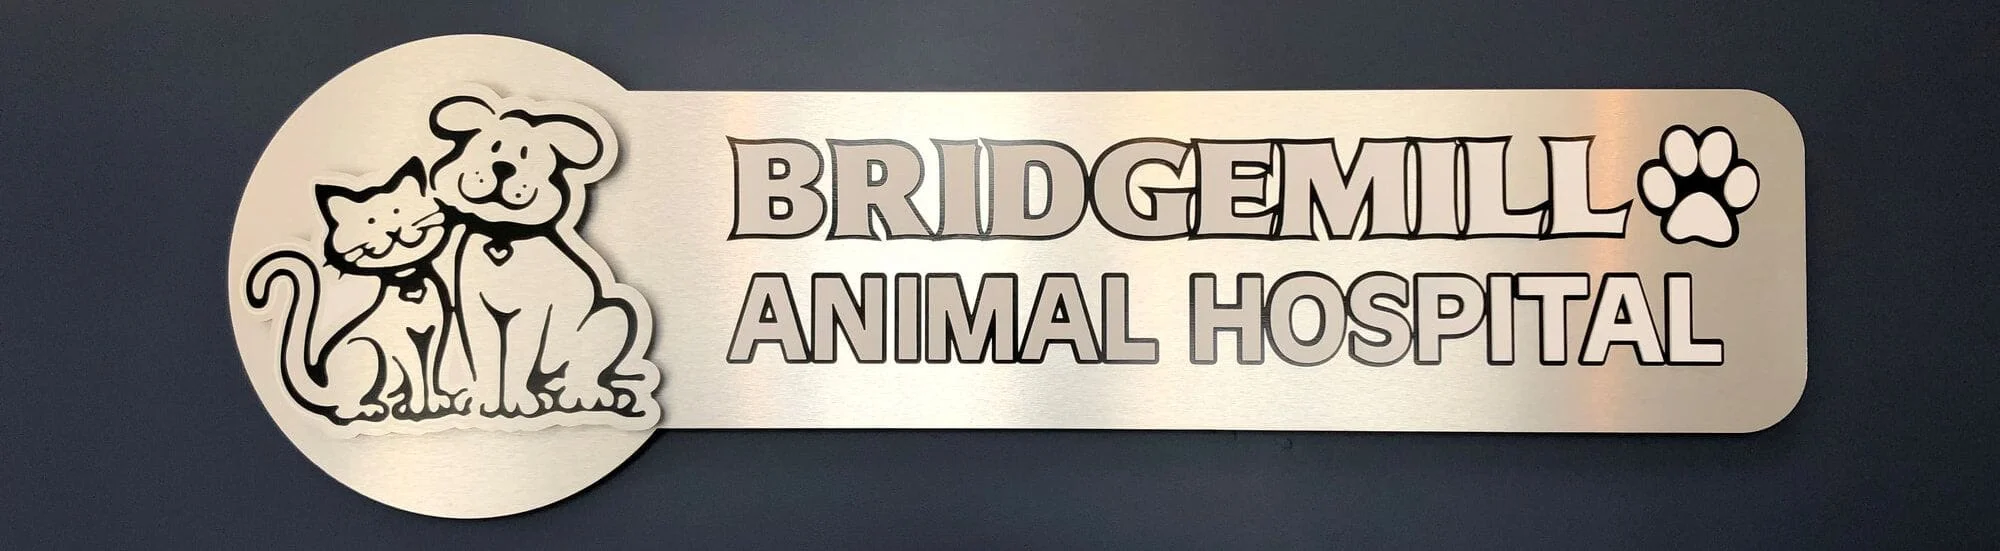 bridgemil animal hospital